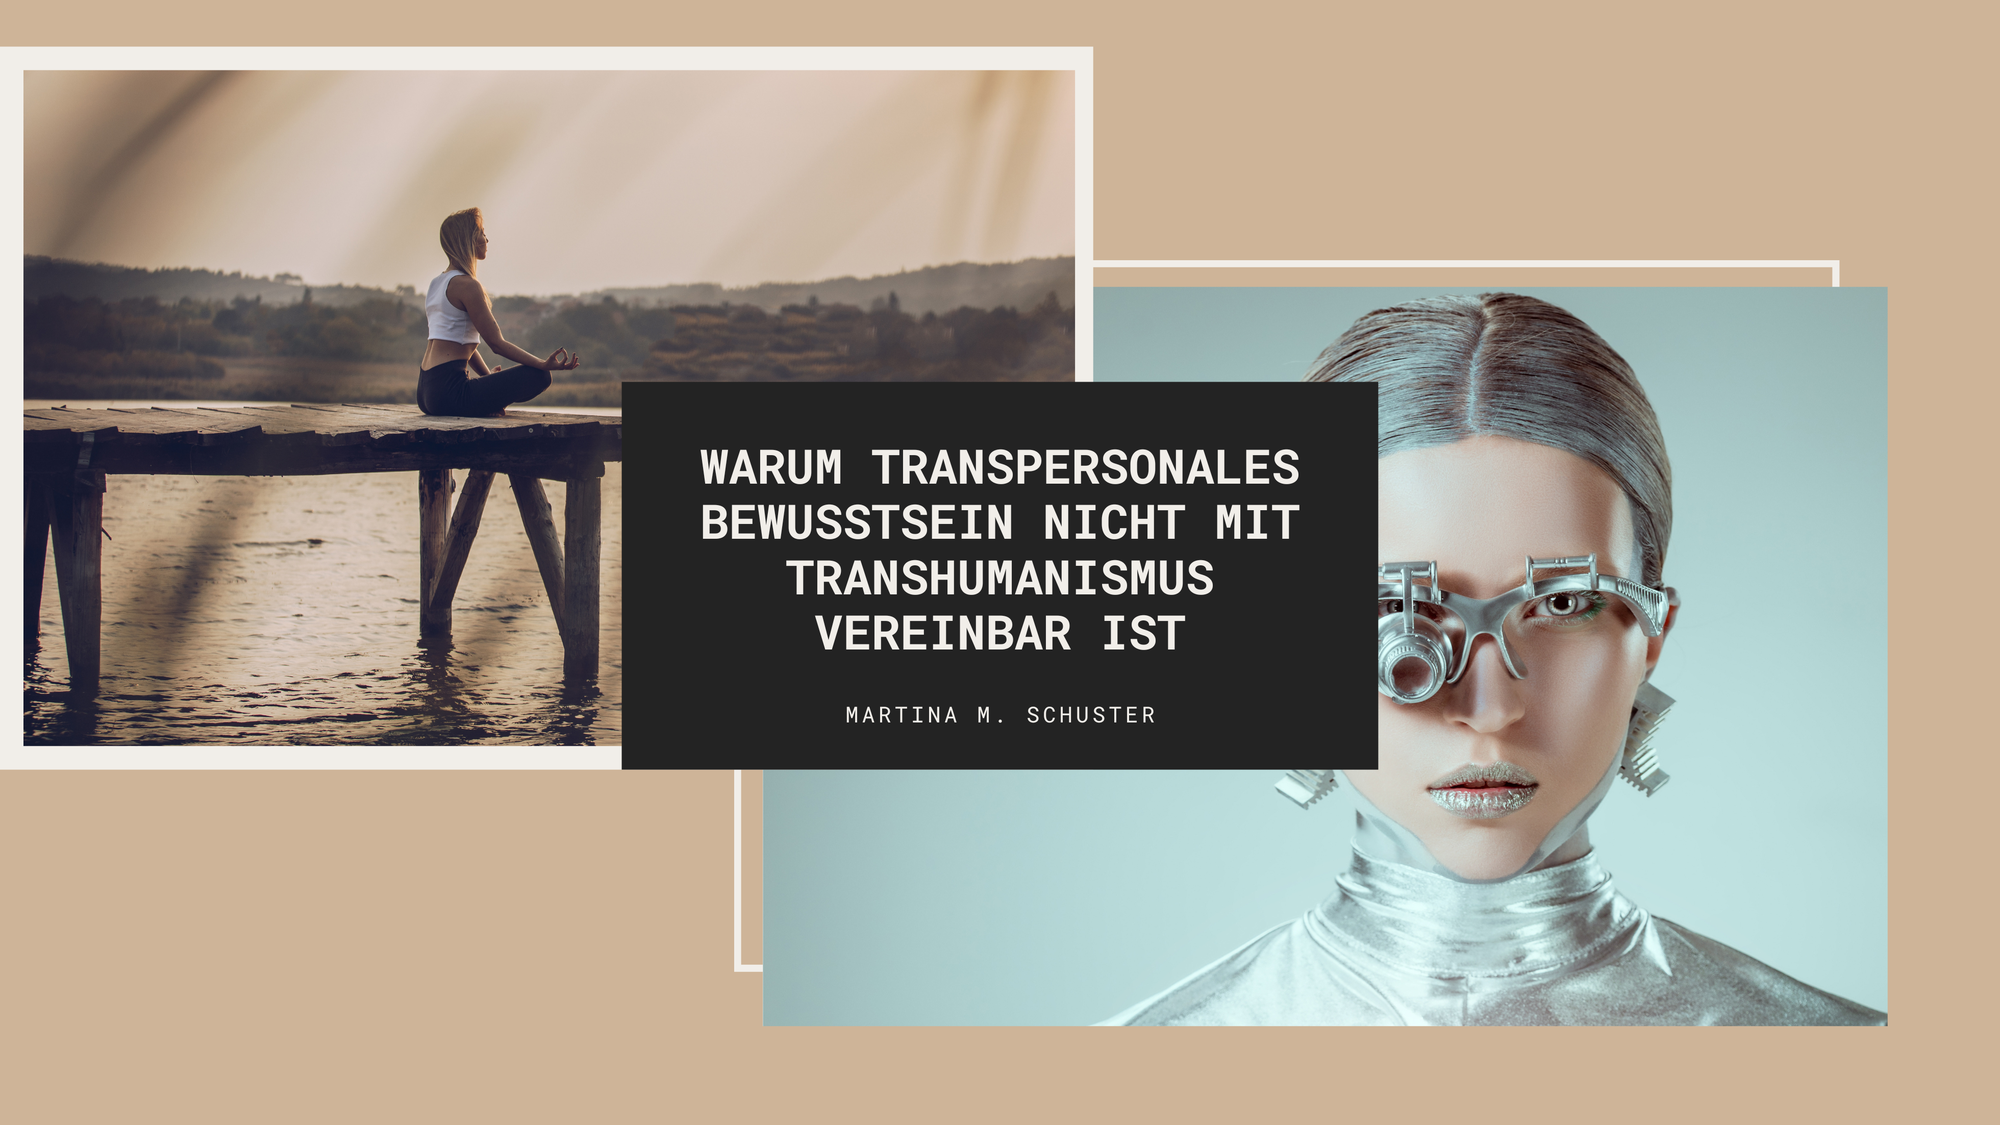 Warum transpersonales Bewusstsein und Transhumanismus nicht miteinander zu vereinbaren sind